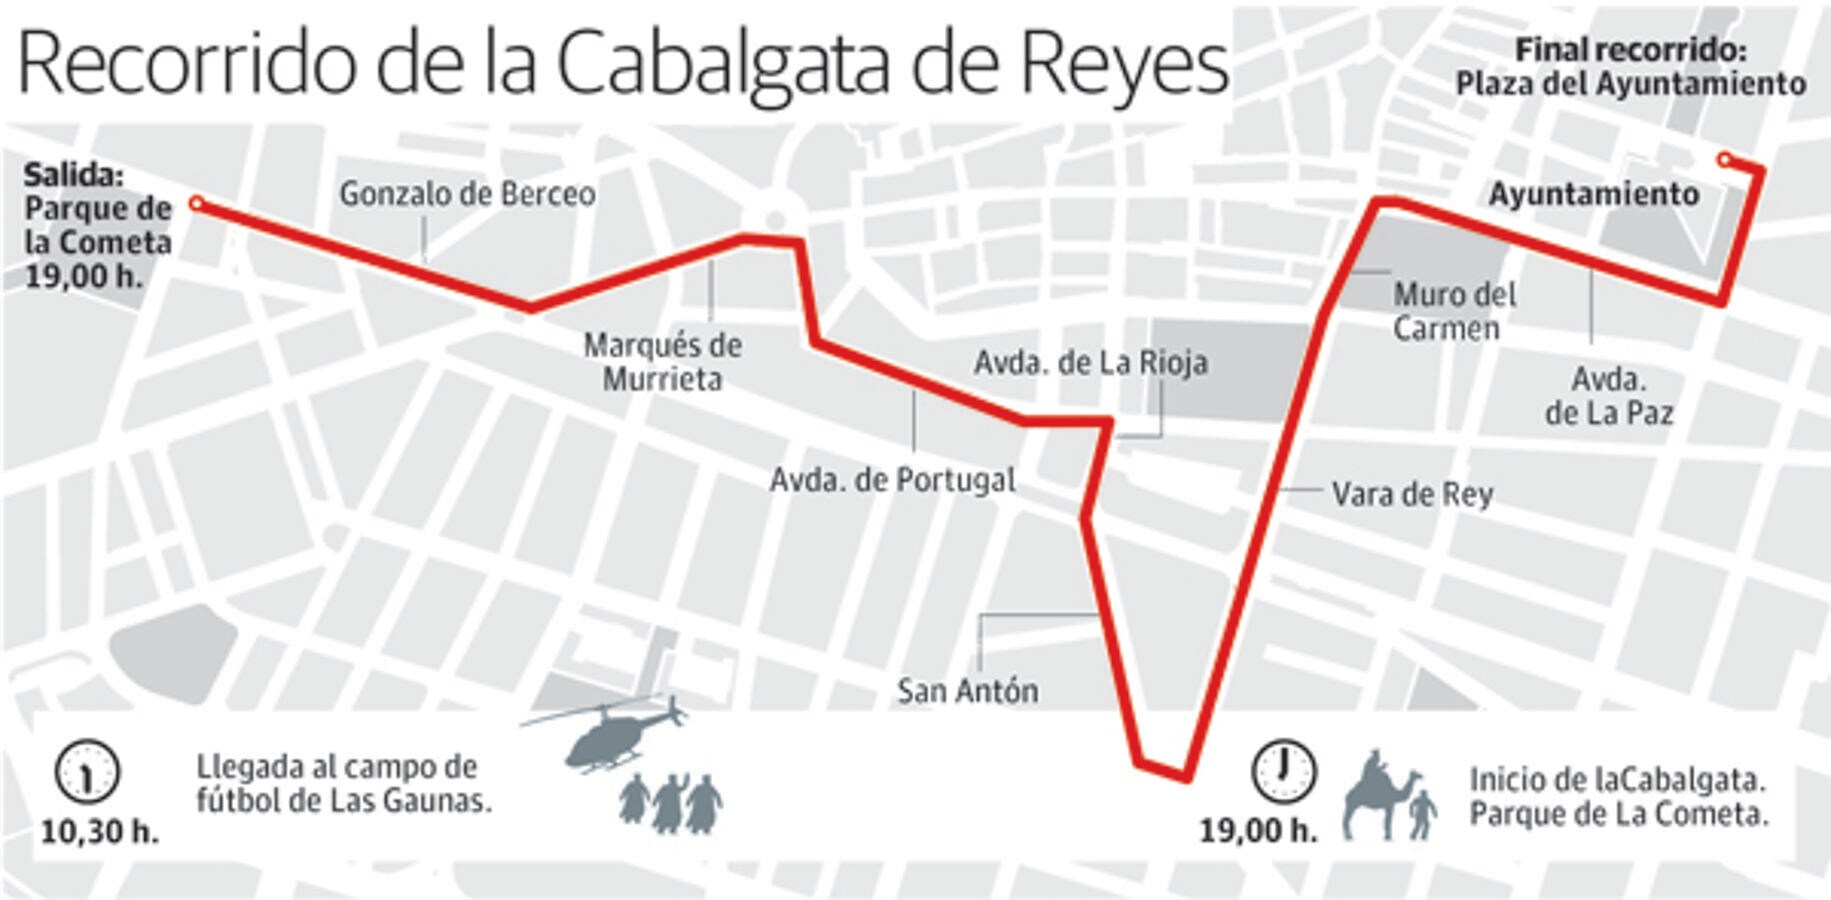 El recorrido de la Cabalgata de Reyes en Logroño